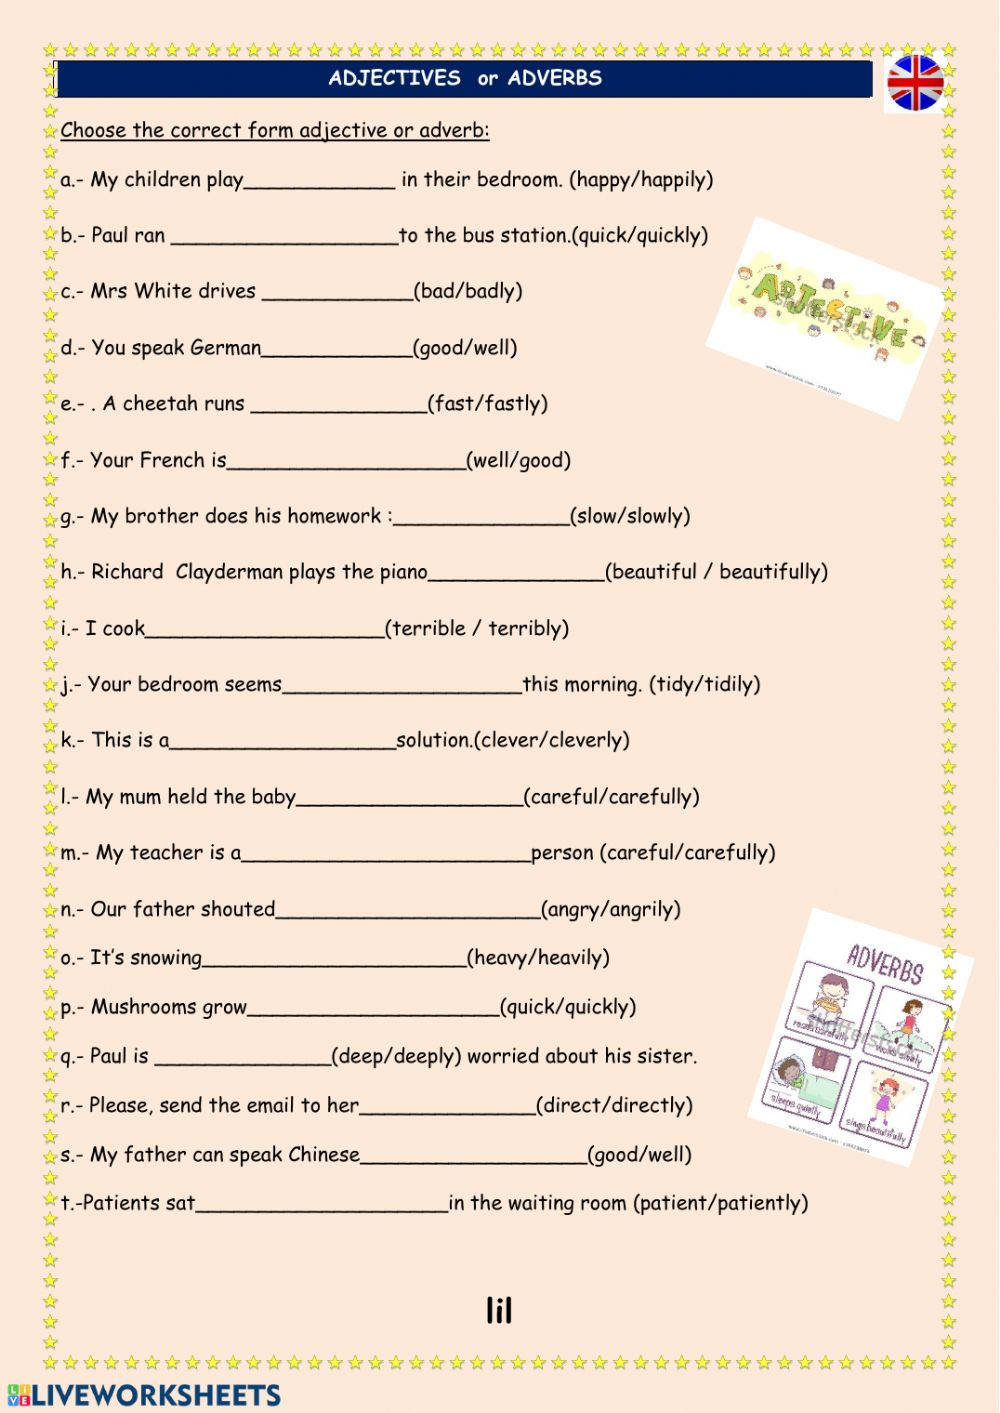 super-teacher-worksheets-adjectives-adverbs-adverbworksheets